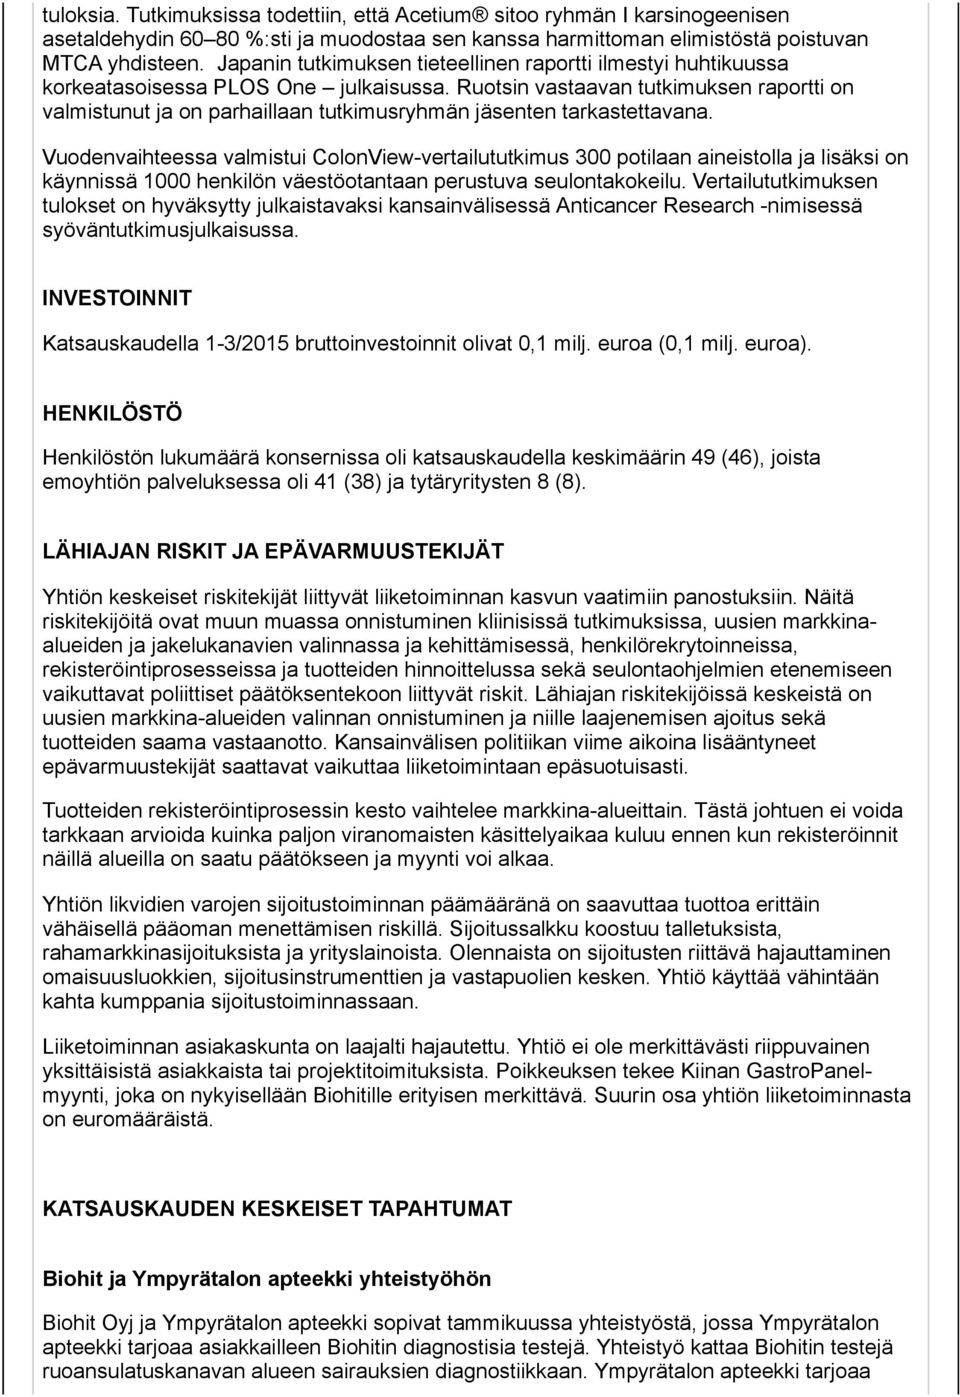 Ruotsin vastaavan tutkimuksen raportti on valmistunut ja on parhaillaan tutkimusryhmän jäsenten tarkastettavana.